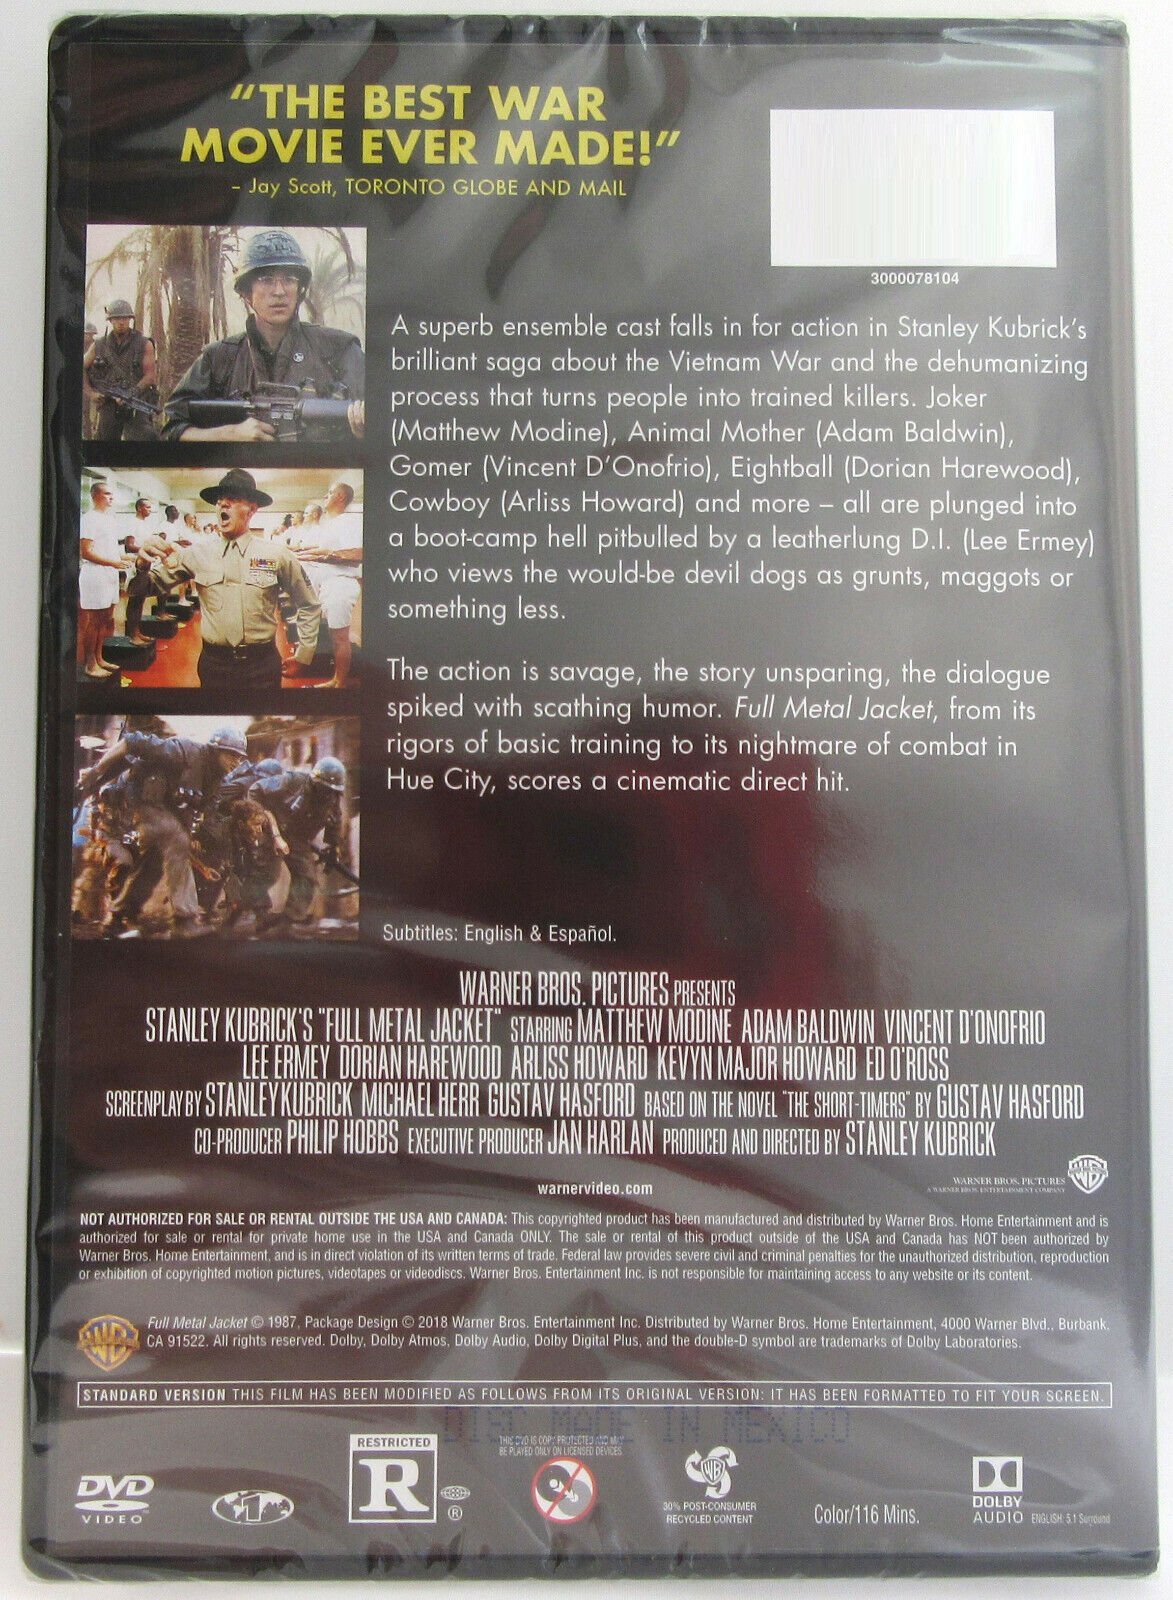 Full Metal Jacket ~ Stanley Kubrick Film ~ 1987 ~ Movie ~ New DVD